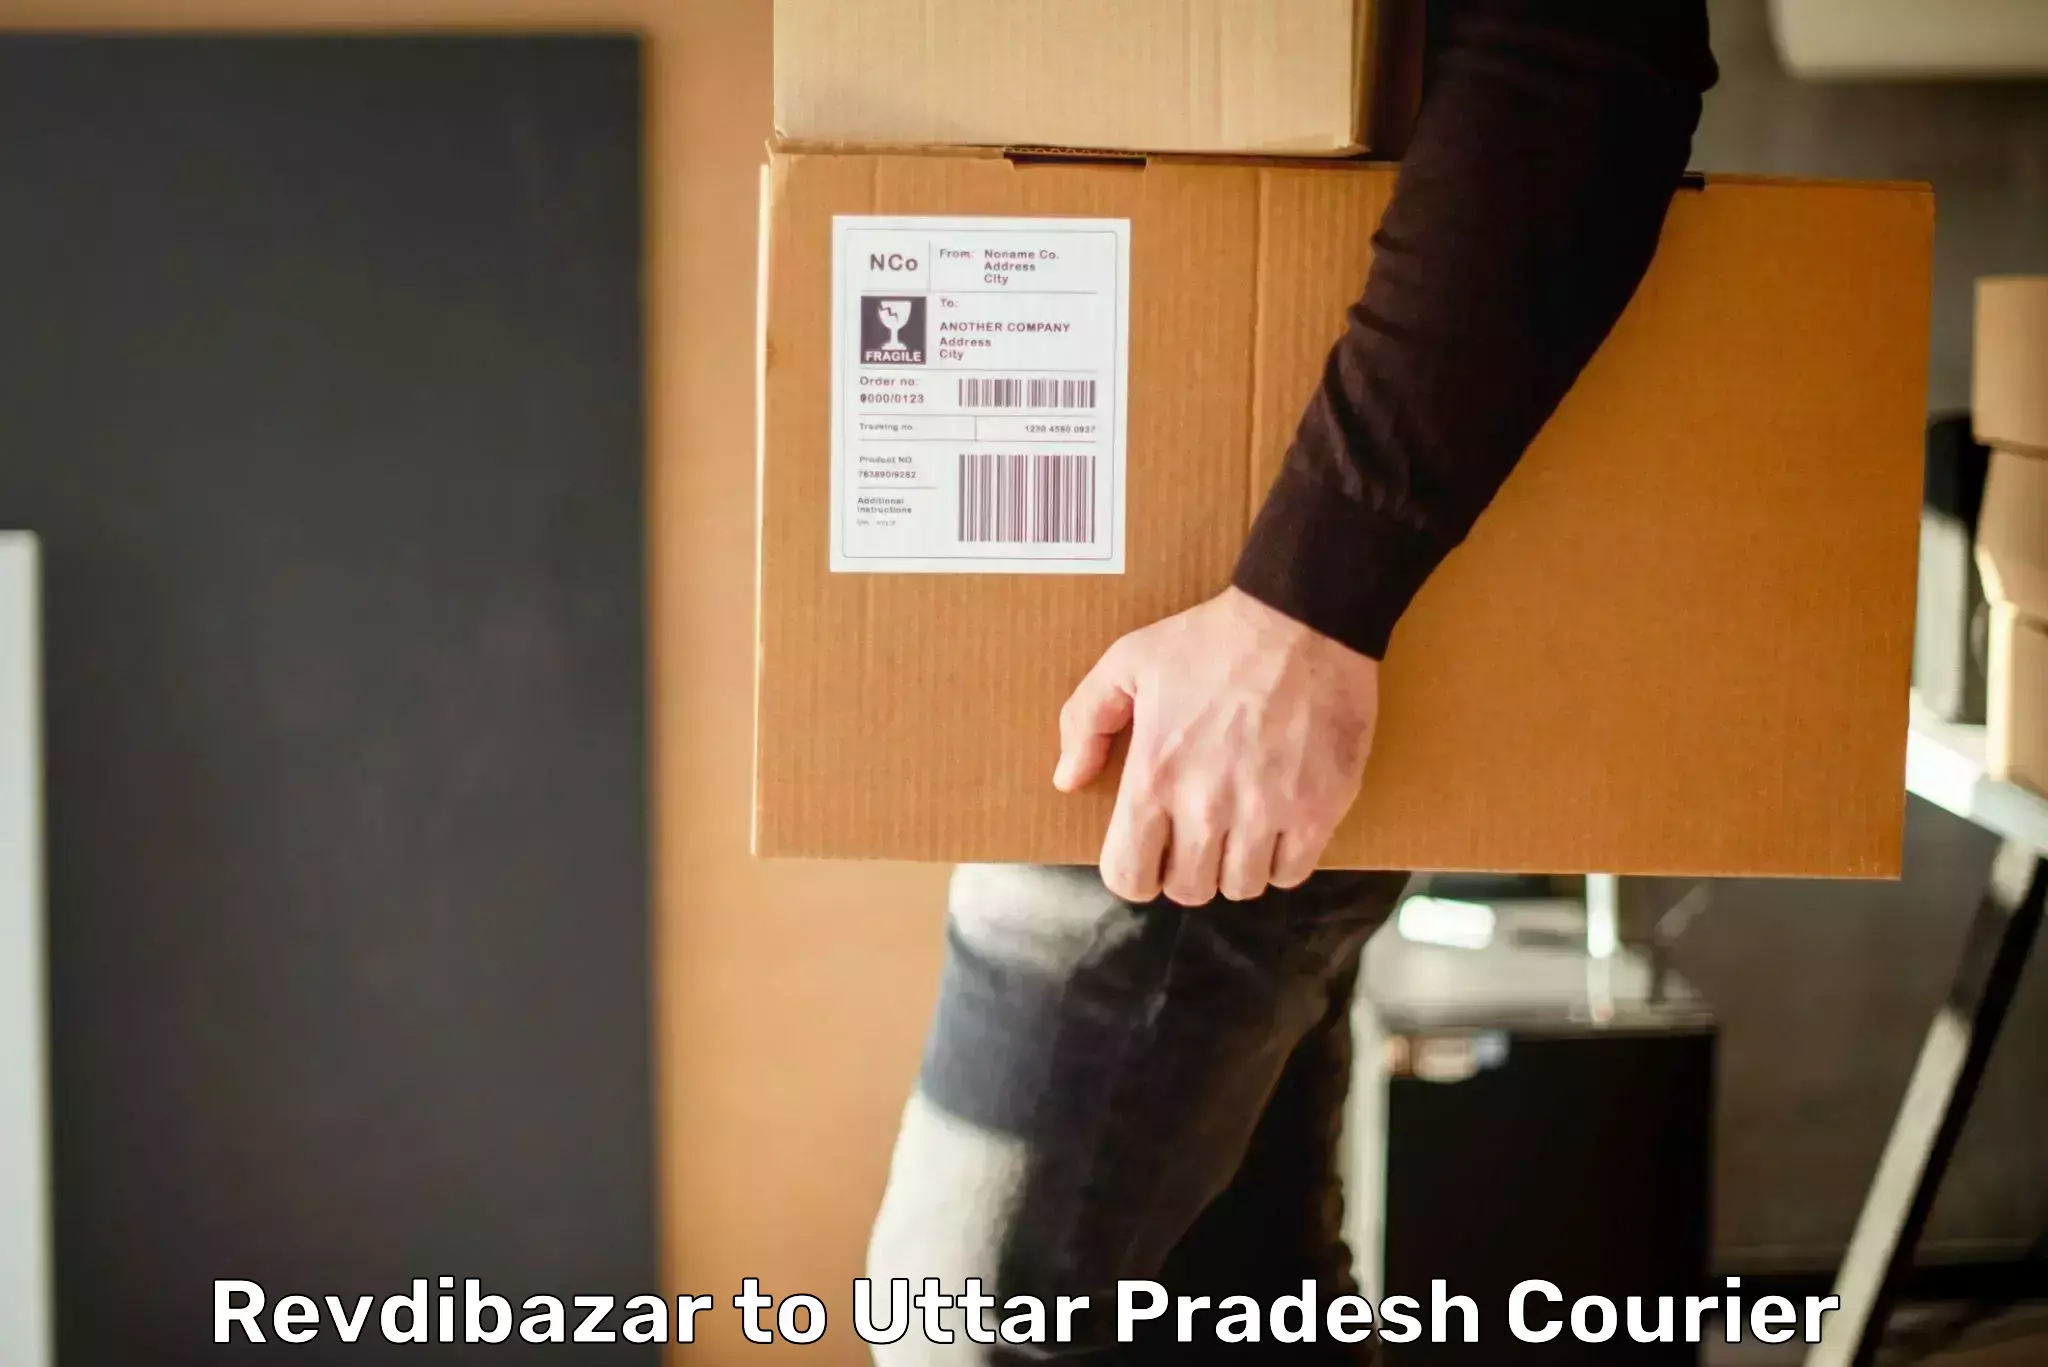 Smart logistics solutions Revdibazar to Uttar Pradesh